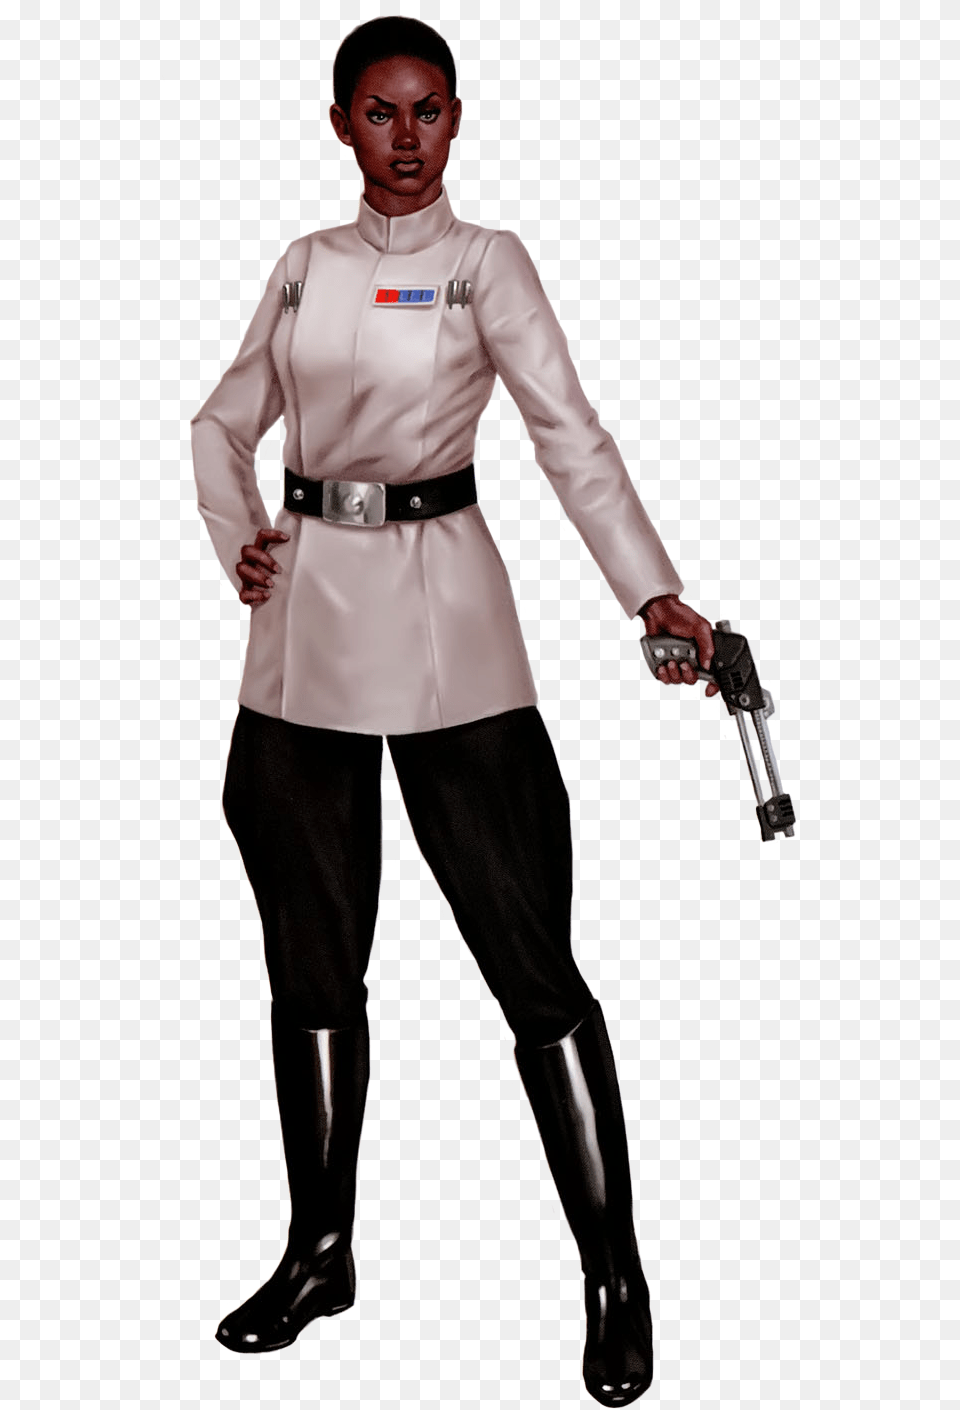 Star Wars Rey, Weapon, Handgun, Gun, Long Sleeve Free Transparent Png